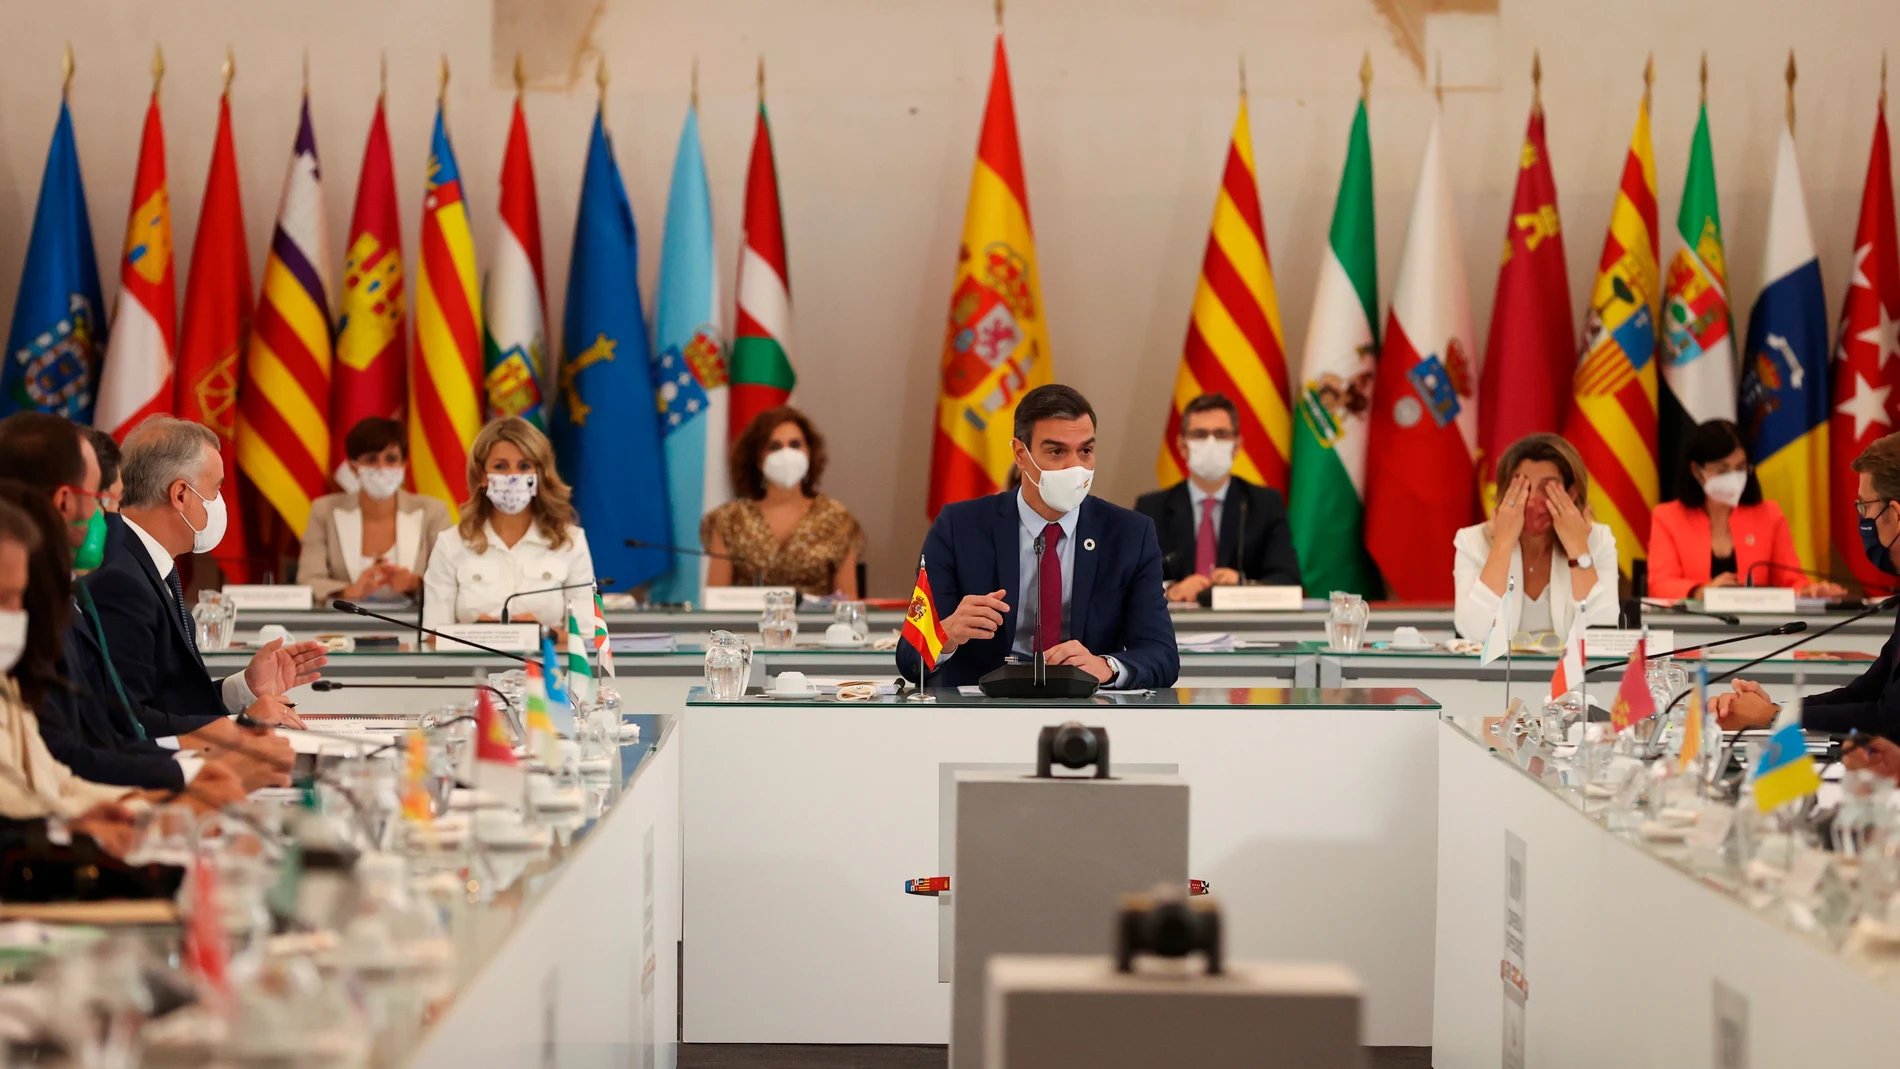 El presidente del Gobierno, Pedro Sánchez durante la XXIV Conferencia de Presidentes, el máximo órgano político de coordinación multilateral, que se celebra este viernes en el Convento de San Esteban, en Salamanca